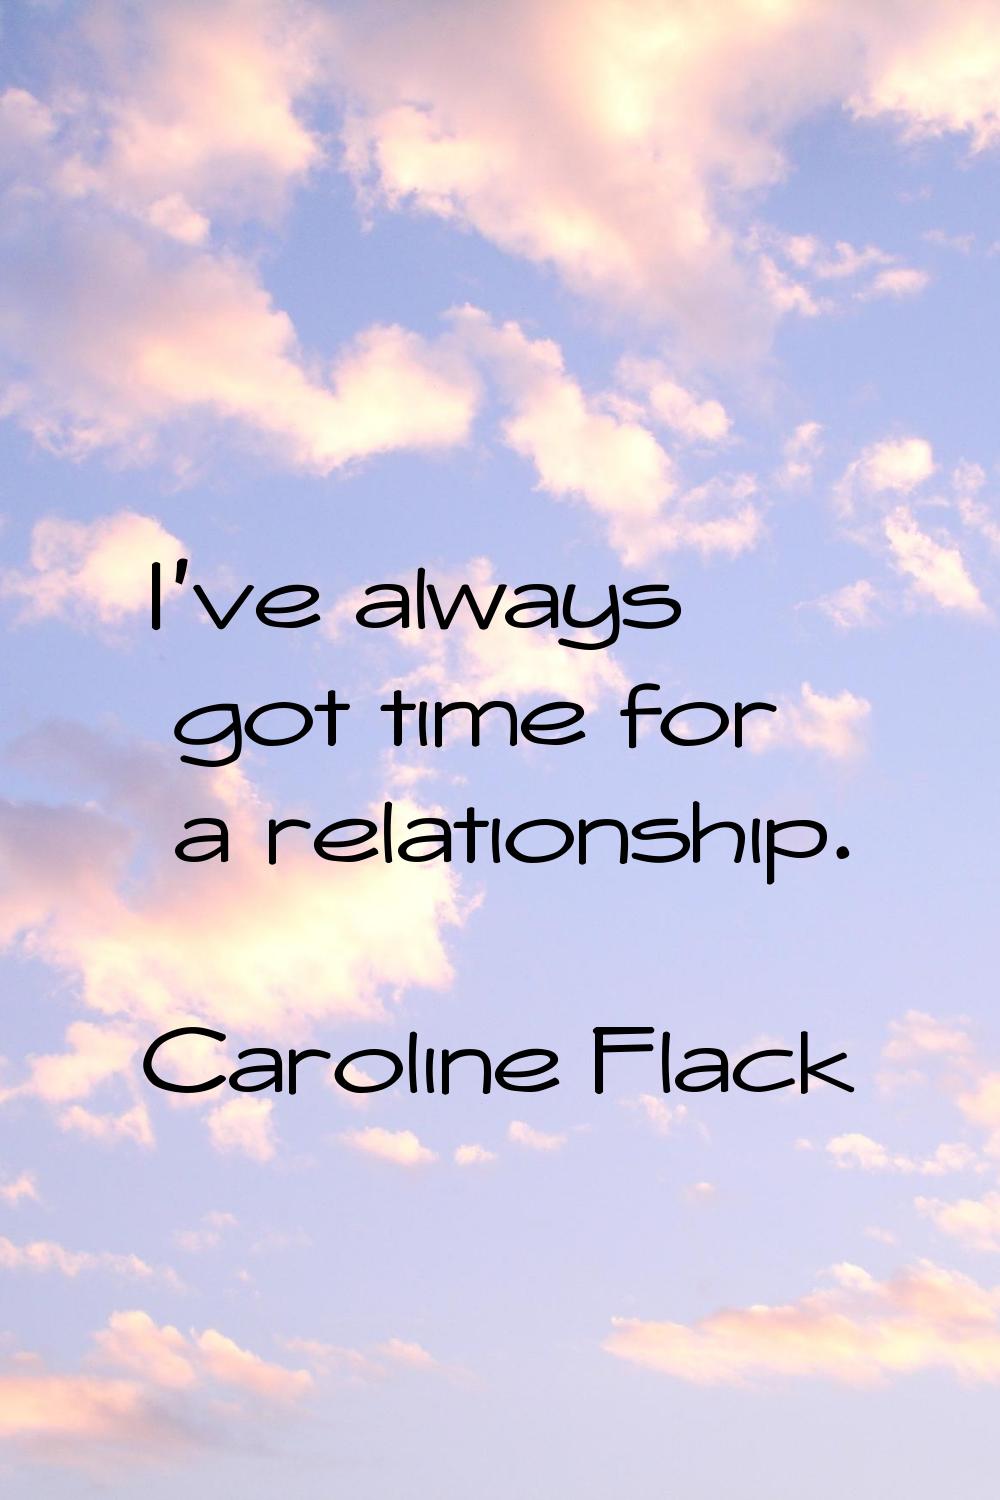 I've always got time for a relationship.